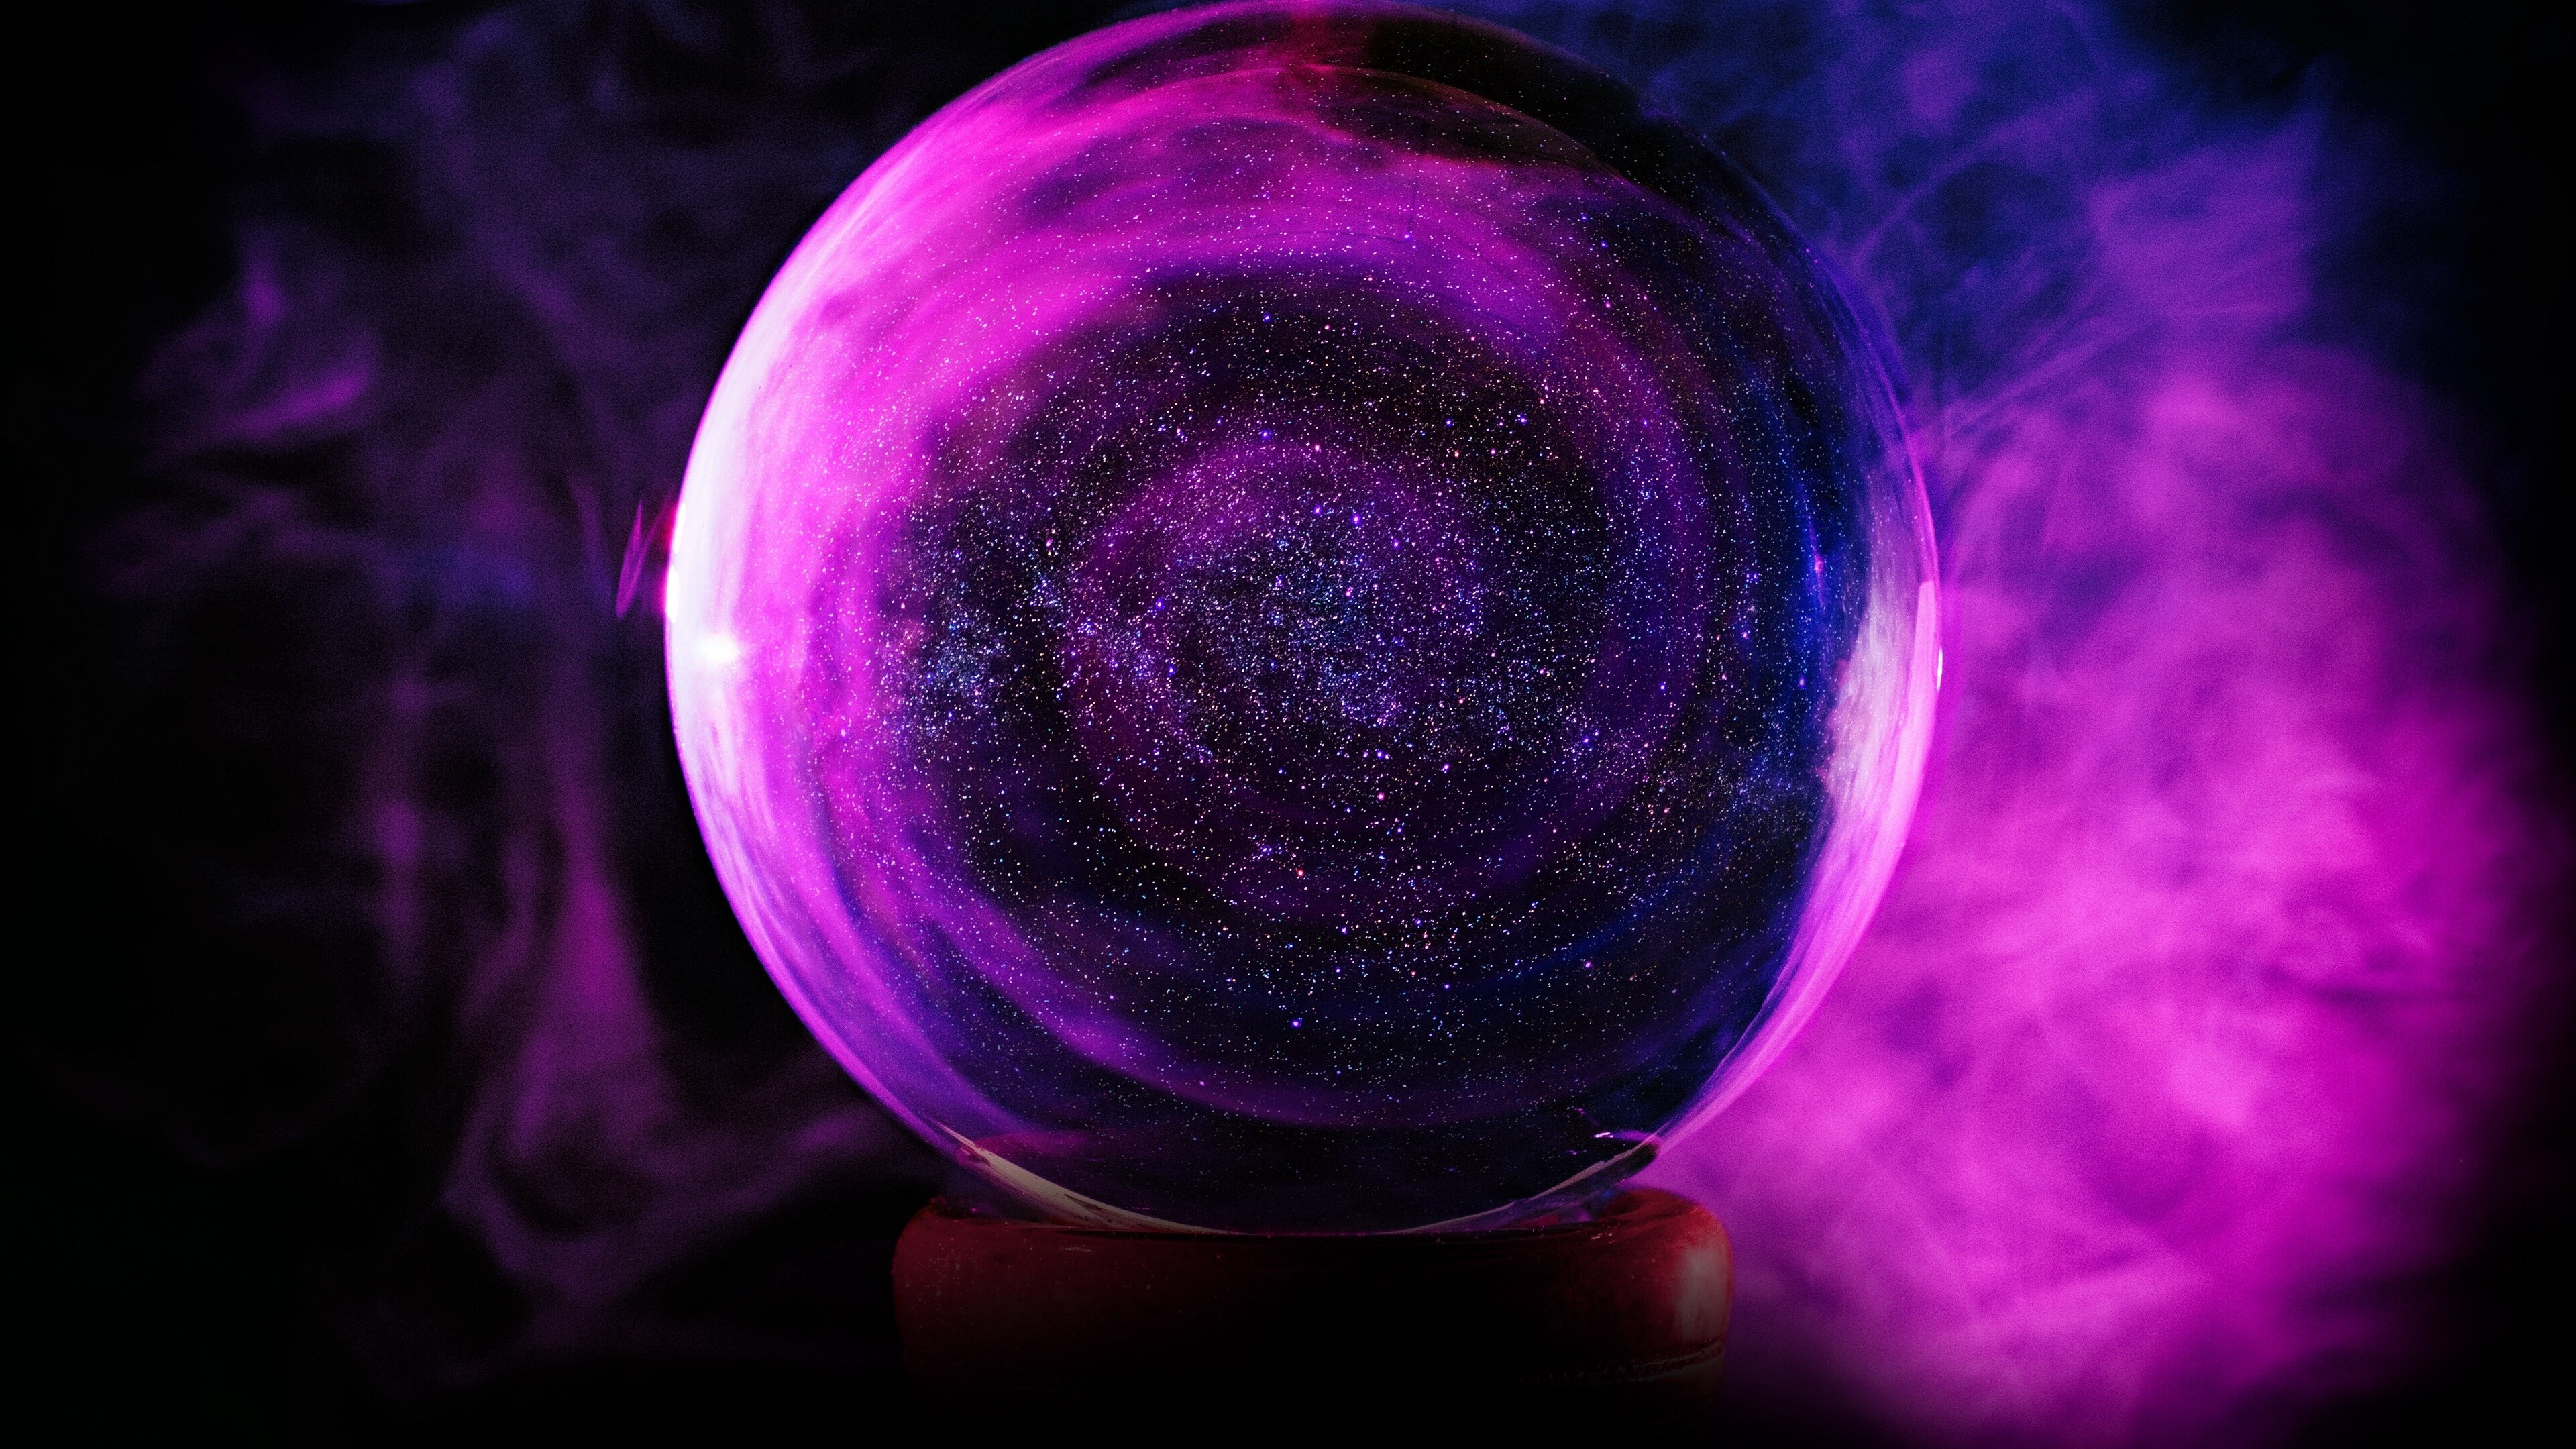 Glass: Pink sphere, Astronomical art, Purple fog, Whirl, An artificial substance. 3840x2160 4K Wallpaper.